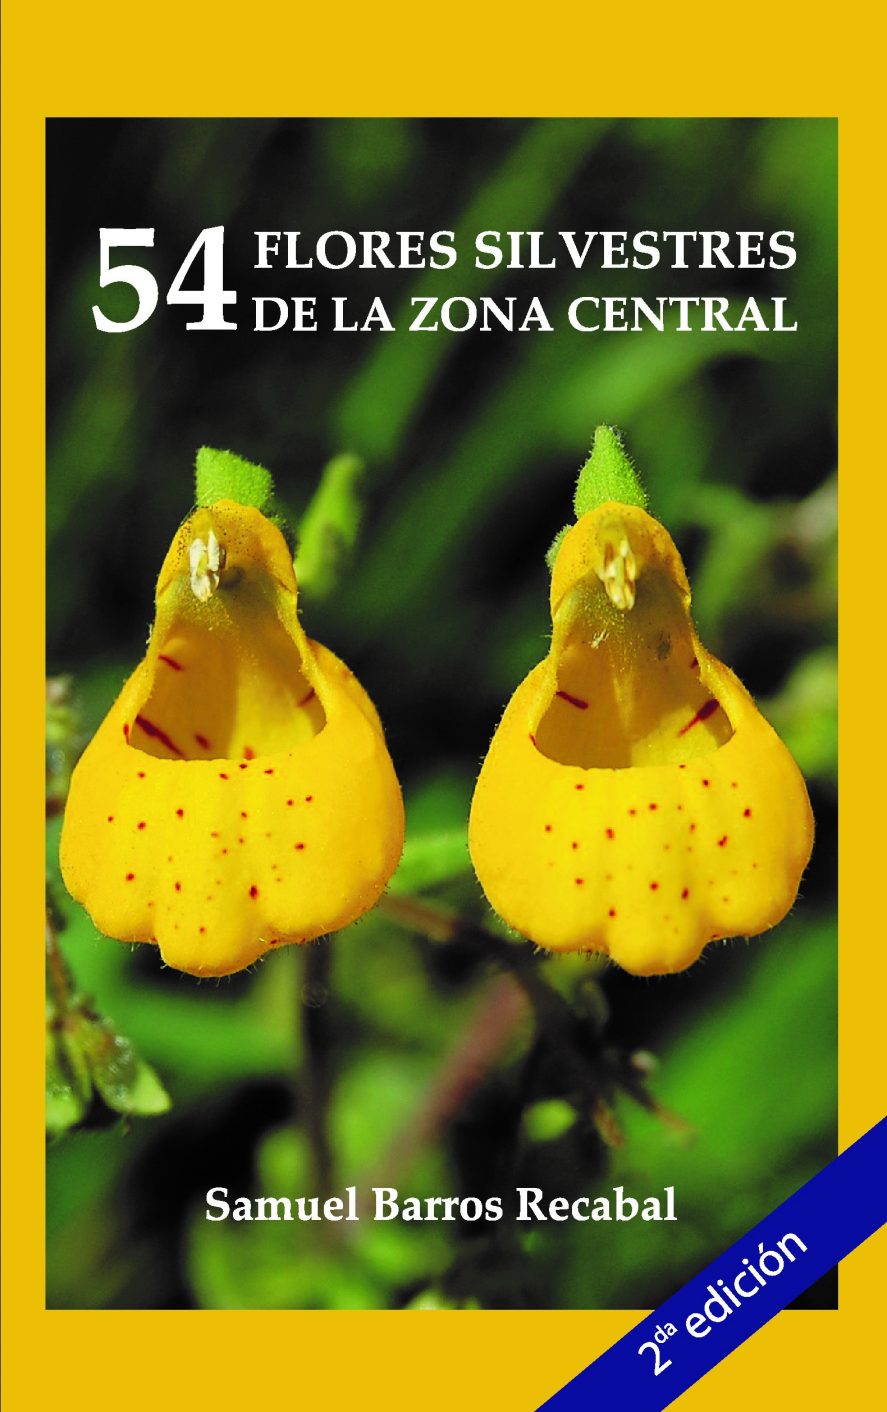 54-Flores-silvestres-de-la-zona-central-887x1412